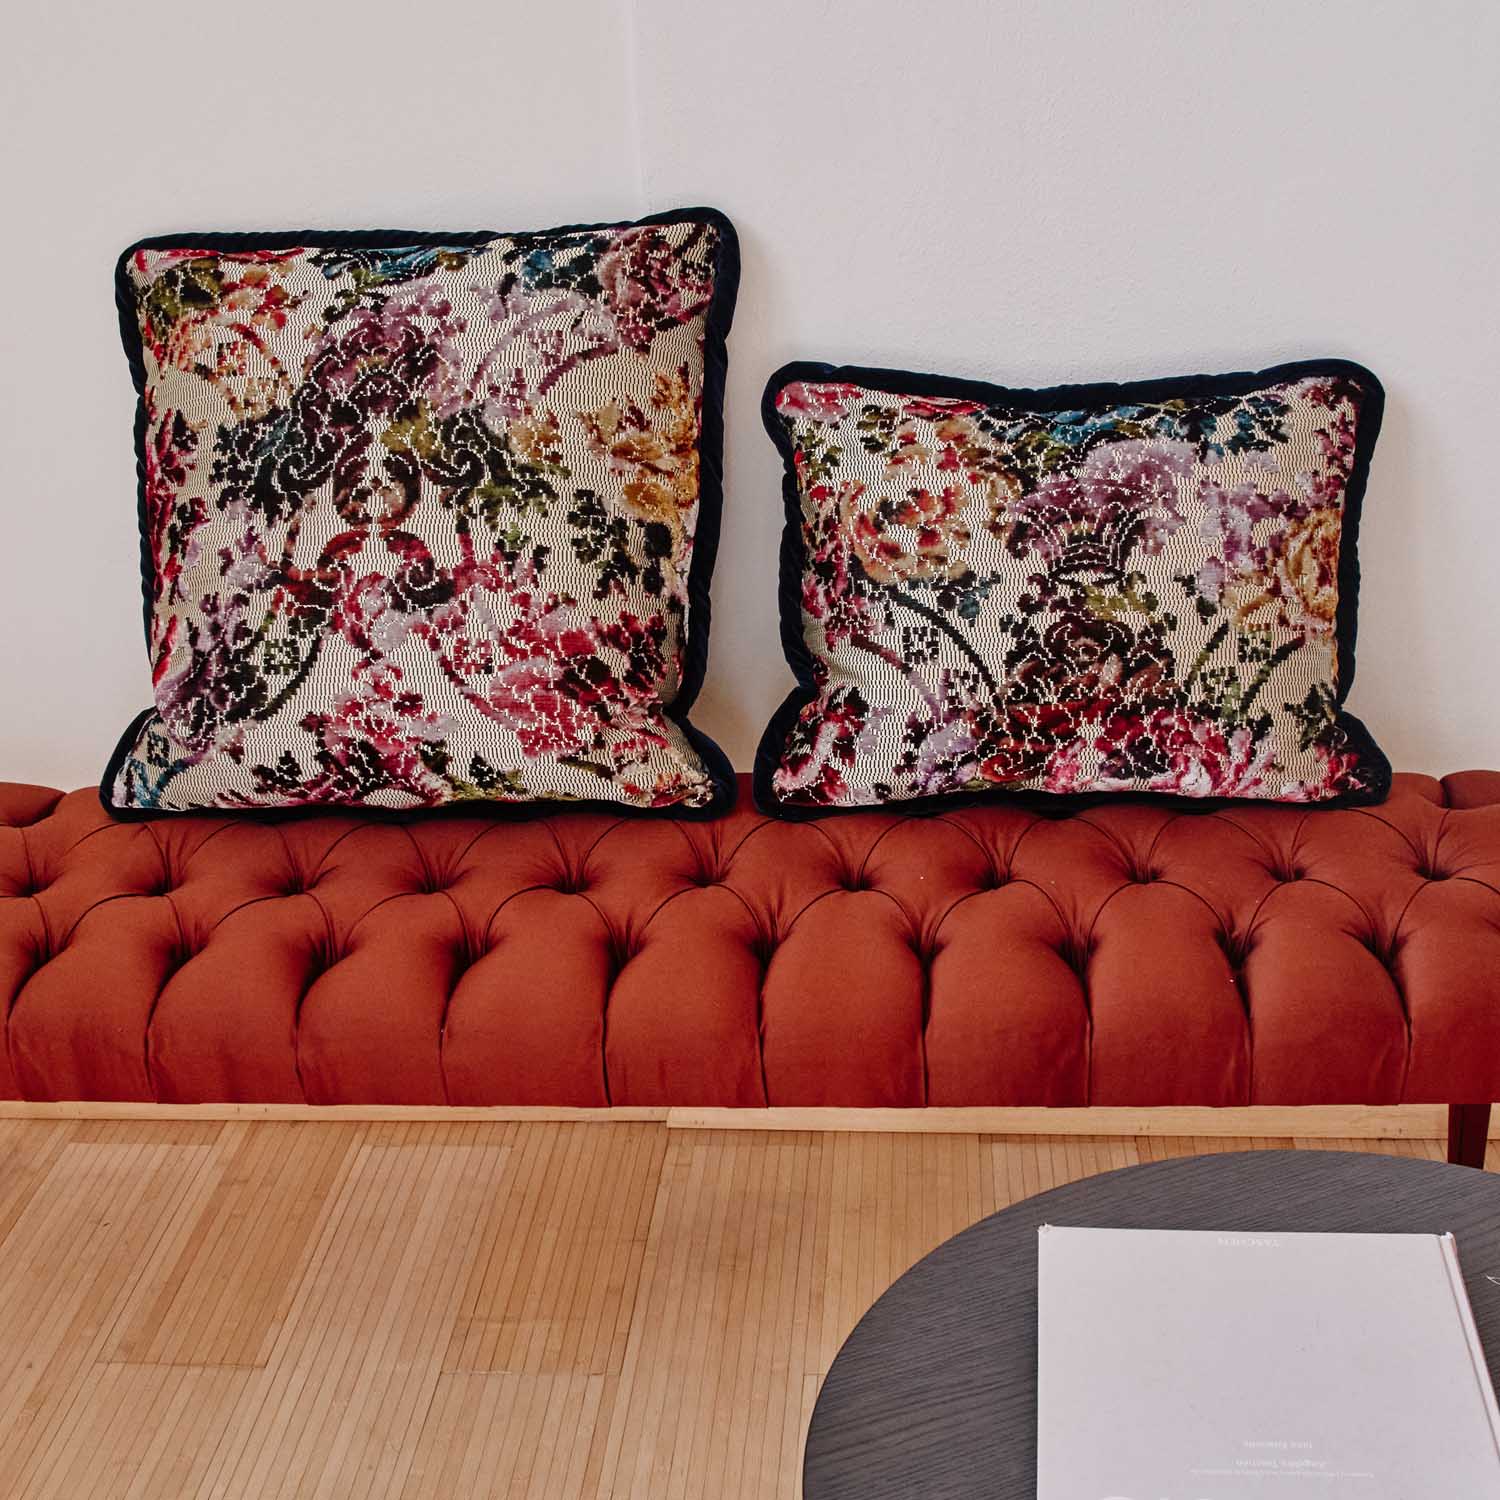 Fashion-Forward Living Room